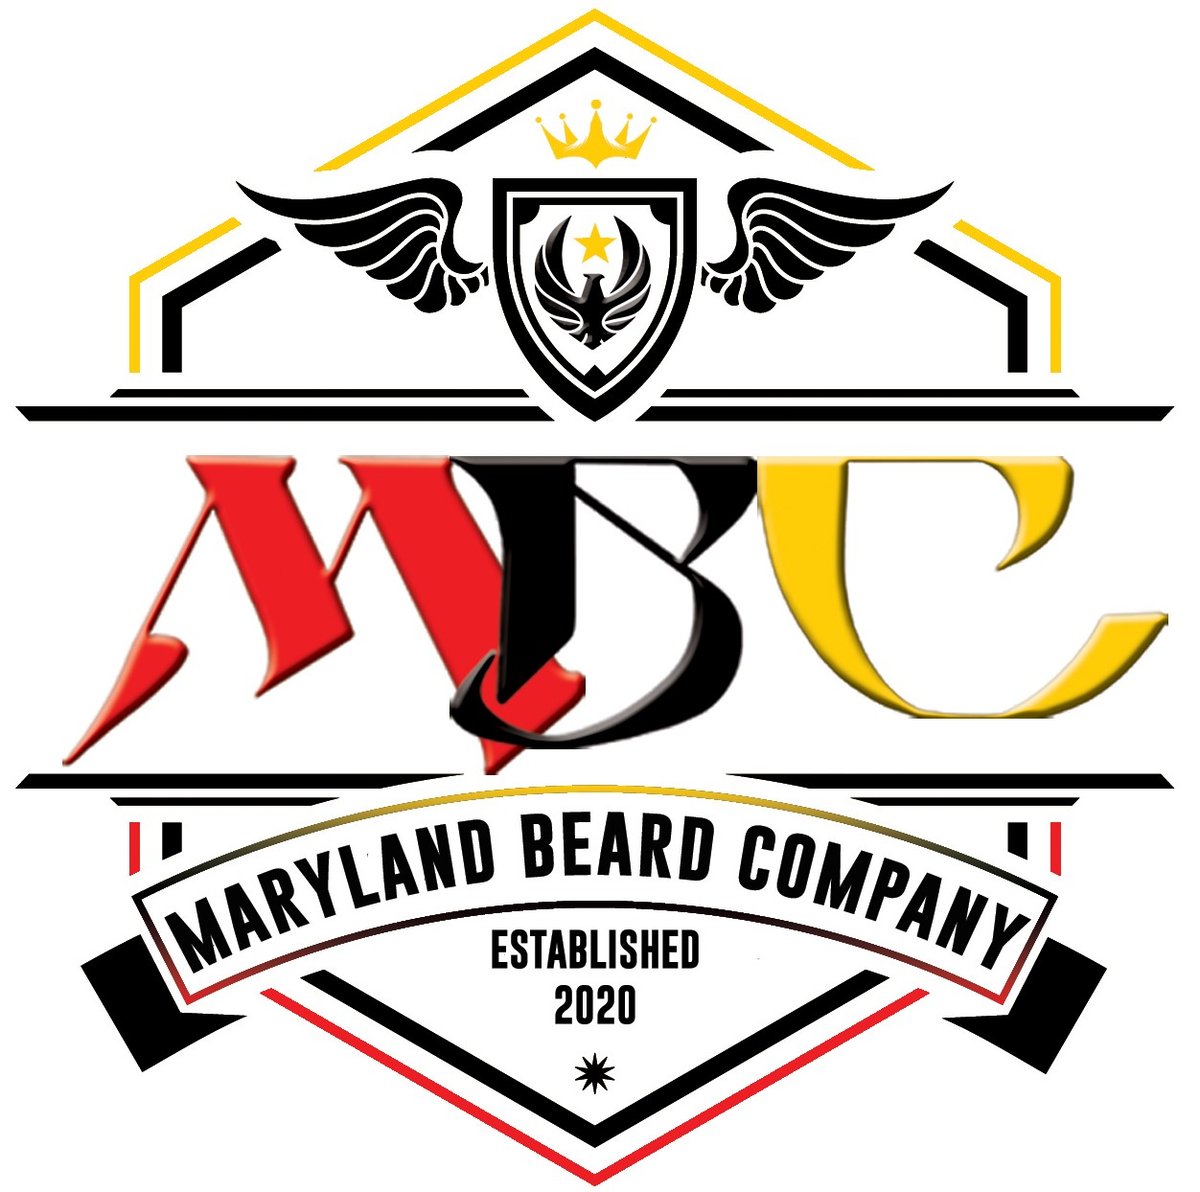 Maryland Beard Company